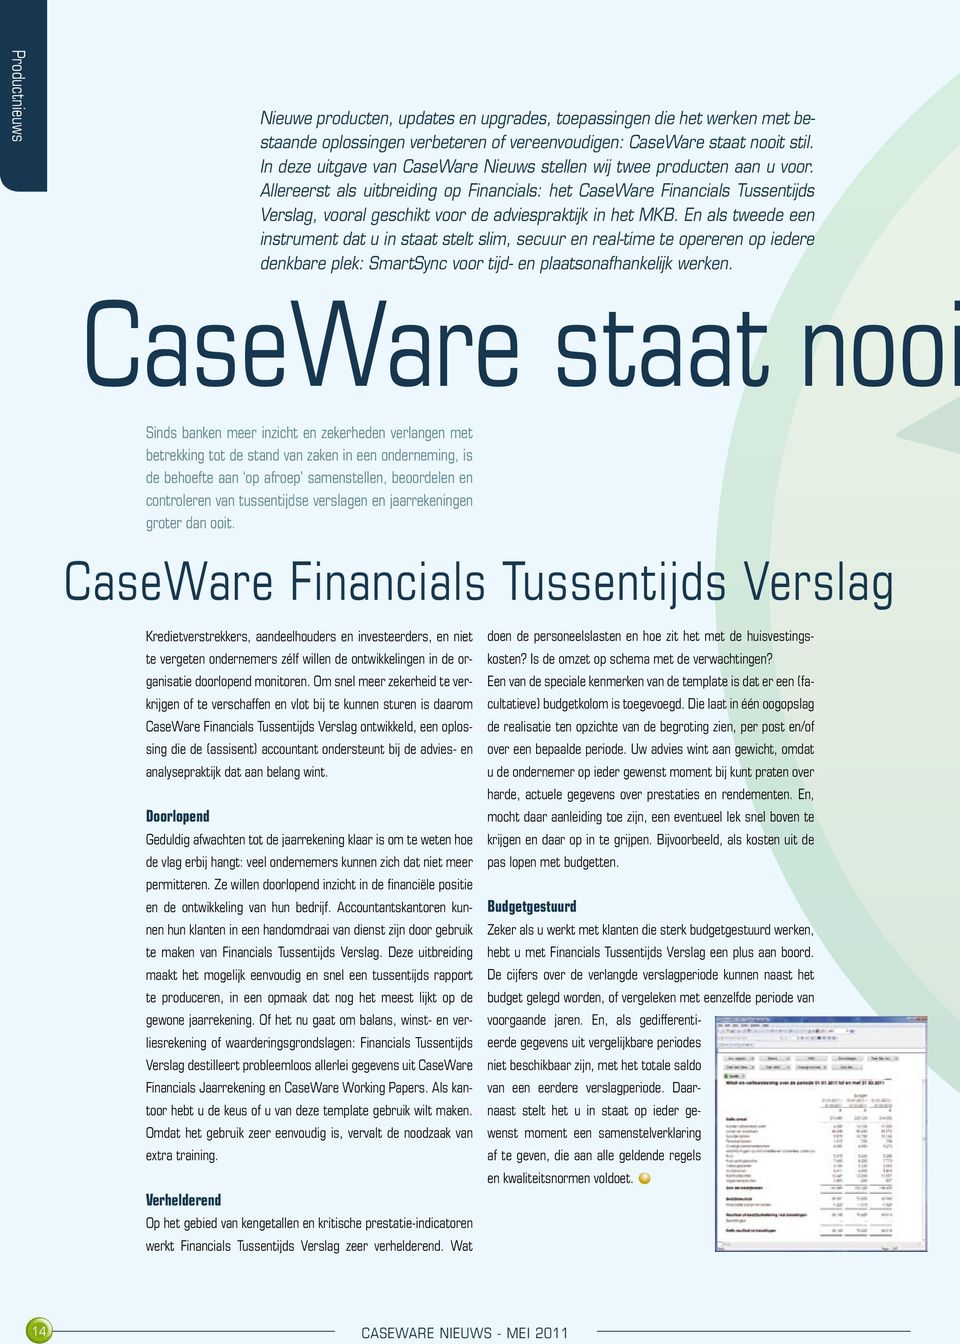 Allereerst als uitbreiding op Financials: het CaseWare Financials Tussentijds Verslag, vooral geschikt voor de adviespraktijk in het MKB.